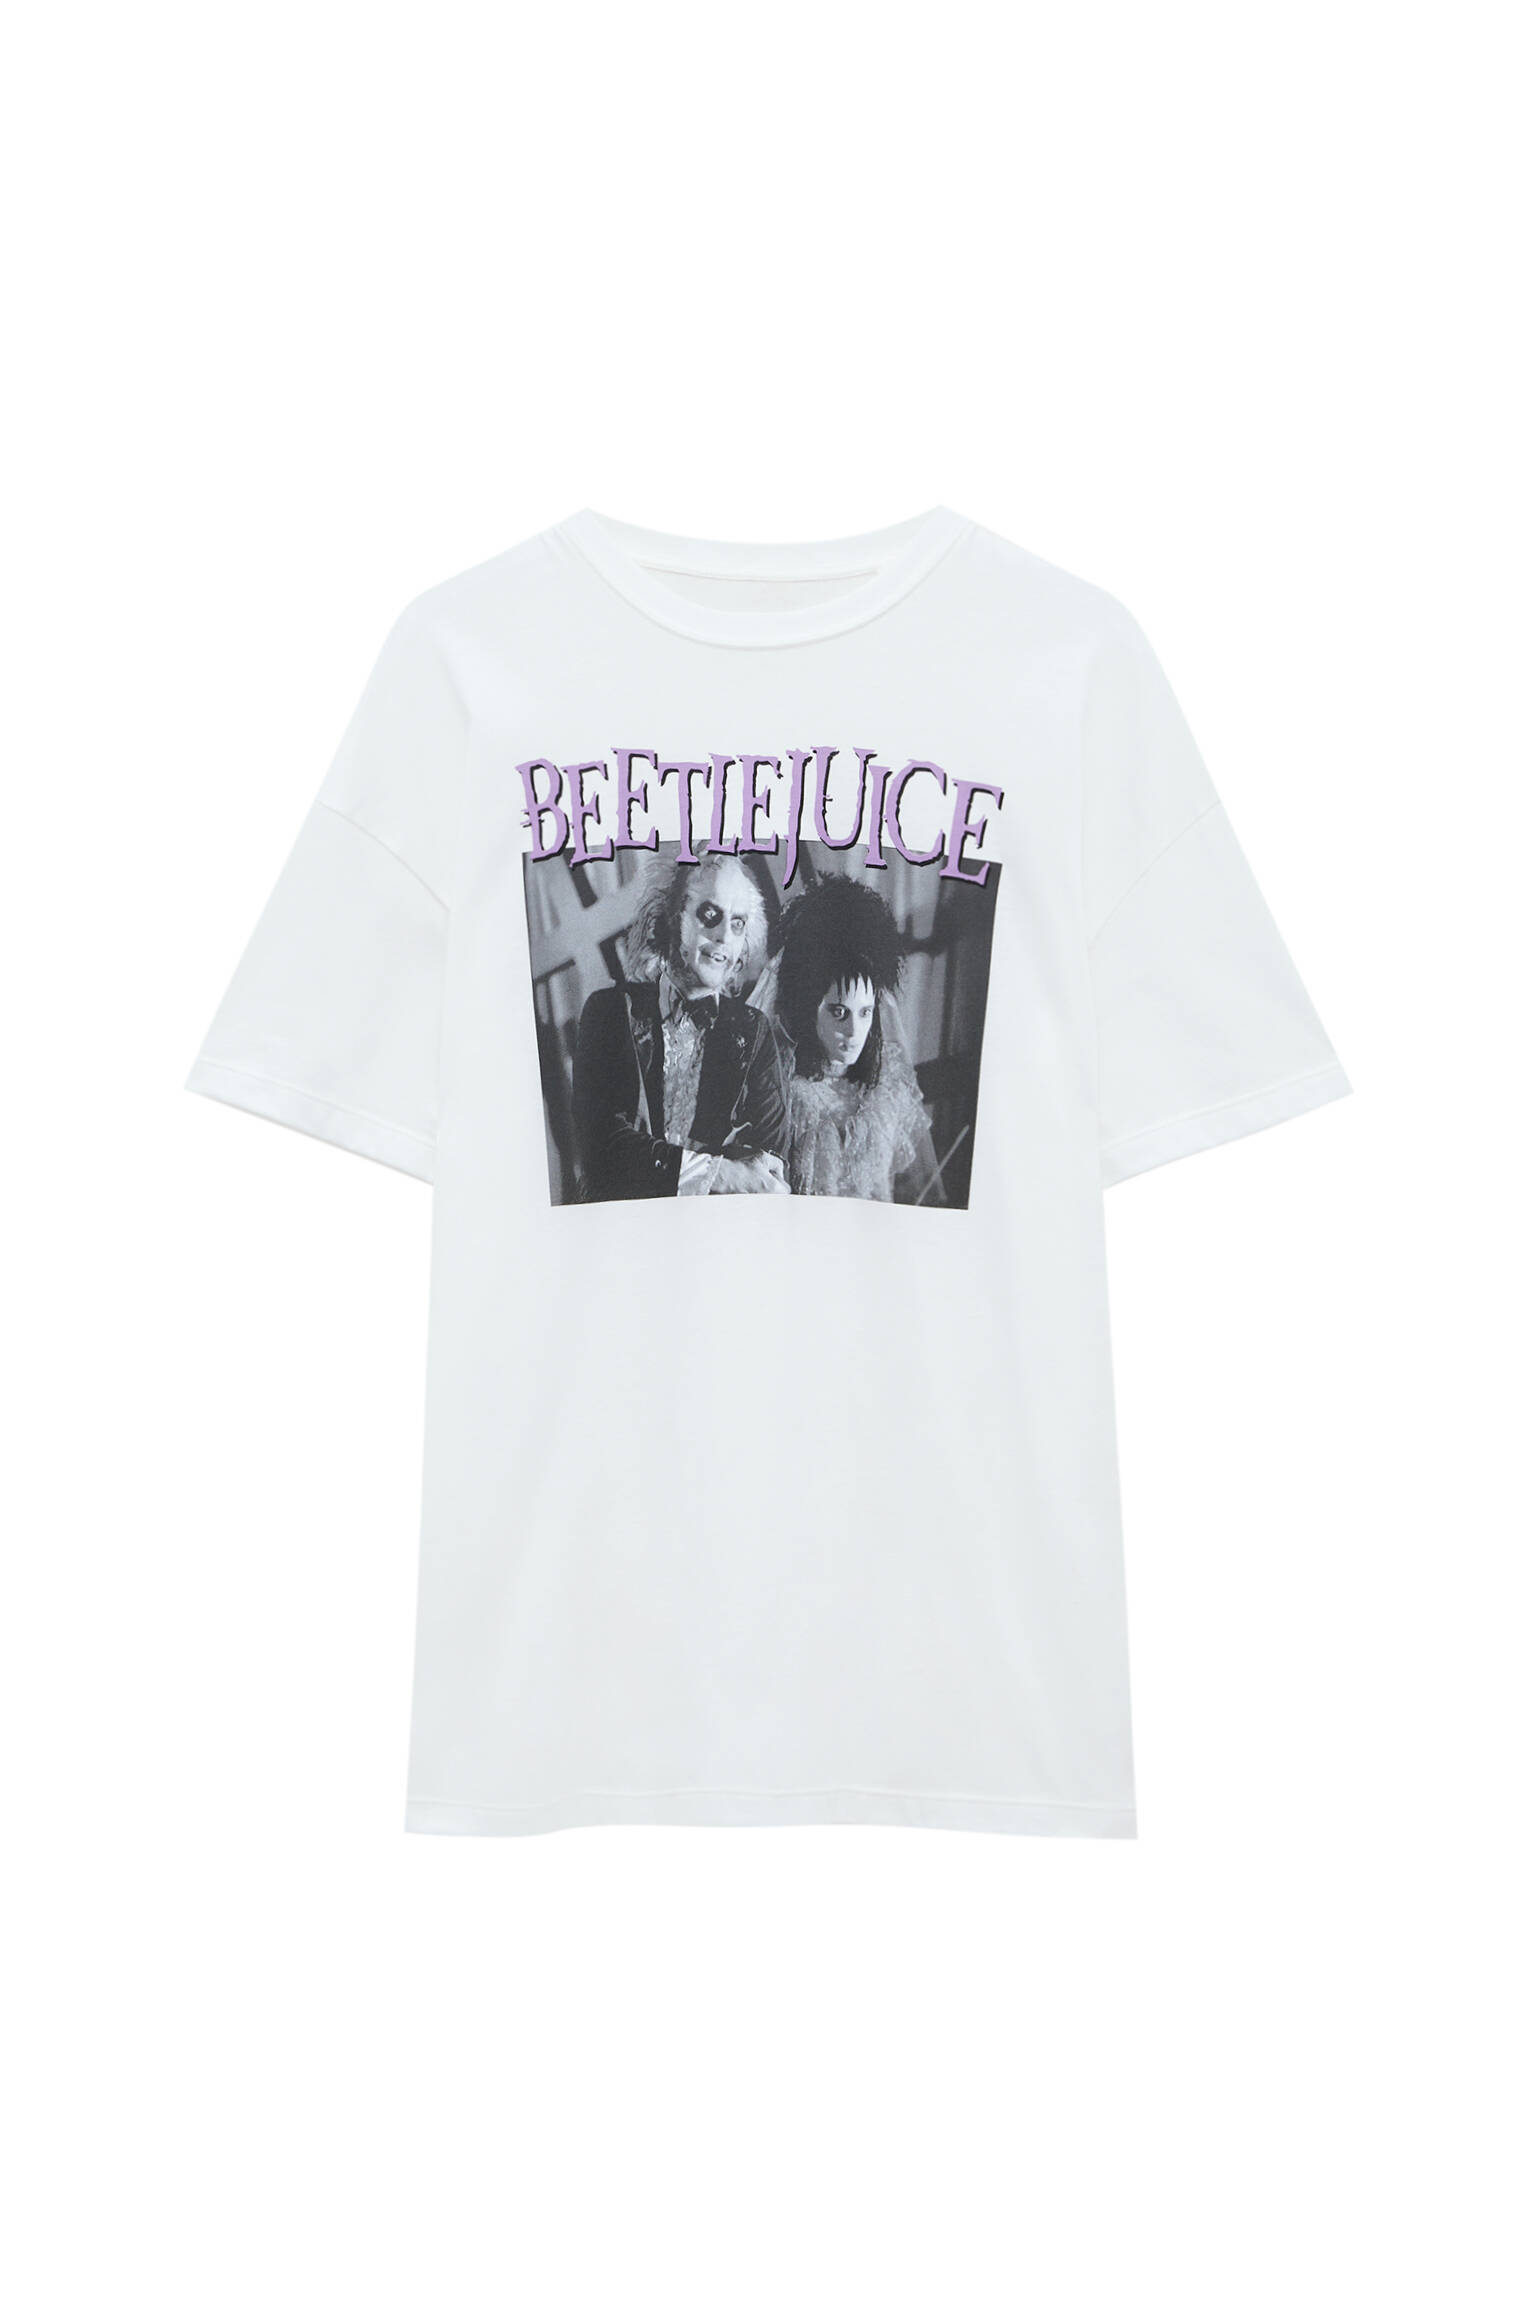 Pull&bear Femme T-shirt Beetlejuice 100 % Coton à Manches Courtes Et Col Rond, Avec Imprimé Photo Et Inscription Contrastants. Glace L